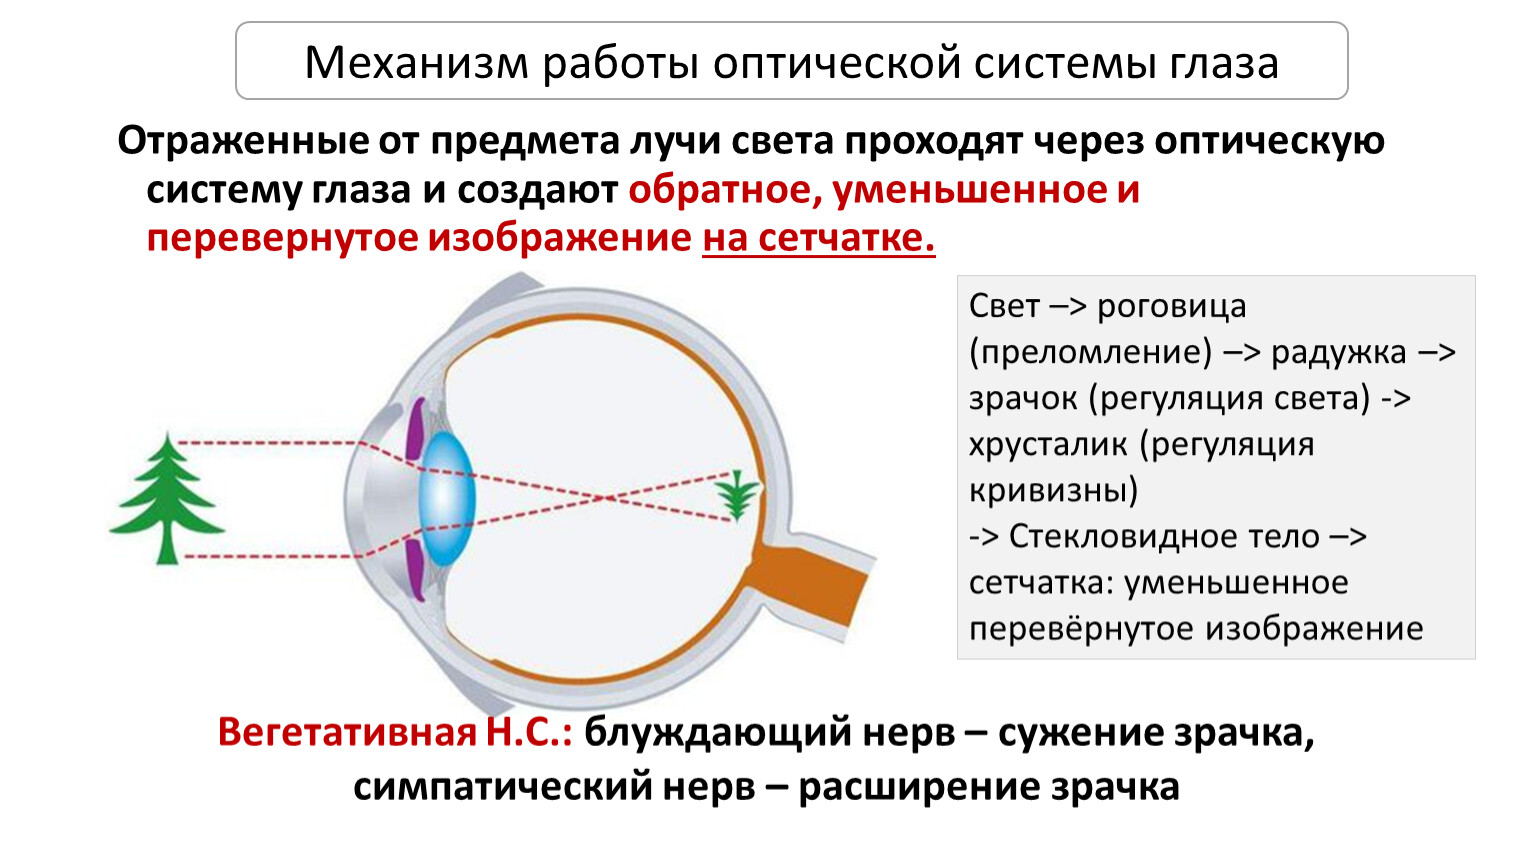 Принцип работы хрусталика практическая работа 8. Схема прохождения света через оптическую систему глаза. Упрощенная оптическая схема глаза. Оптическое строение глаза. Компоненты оптической системы глаза.